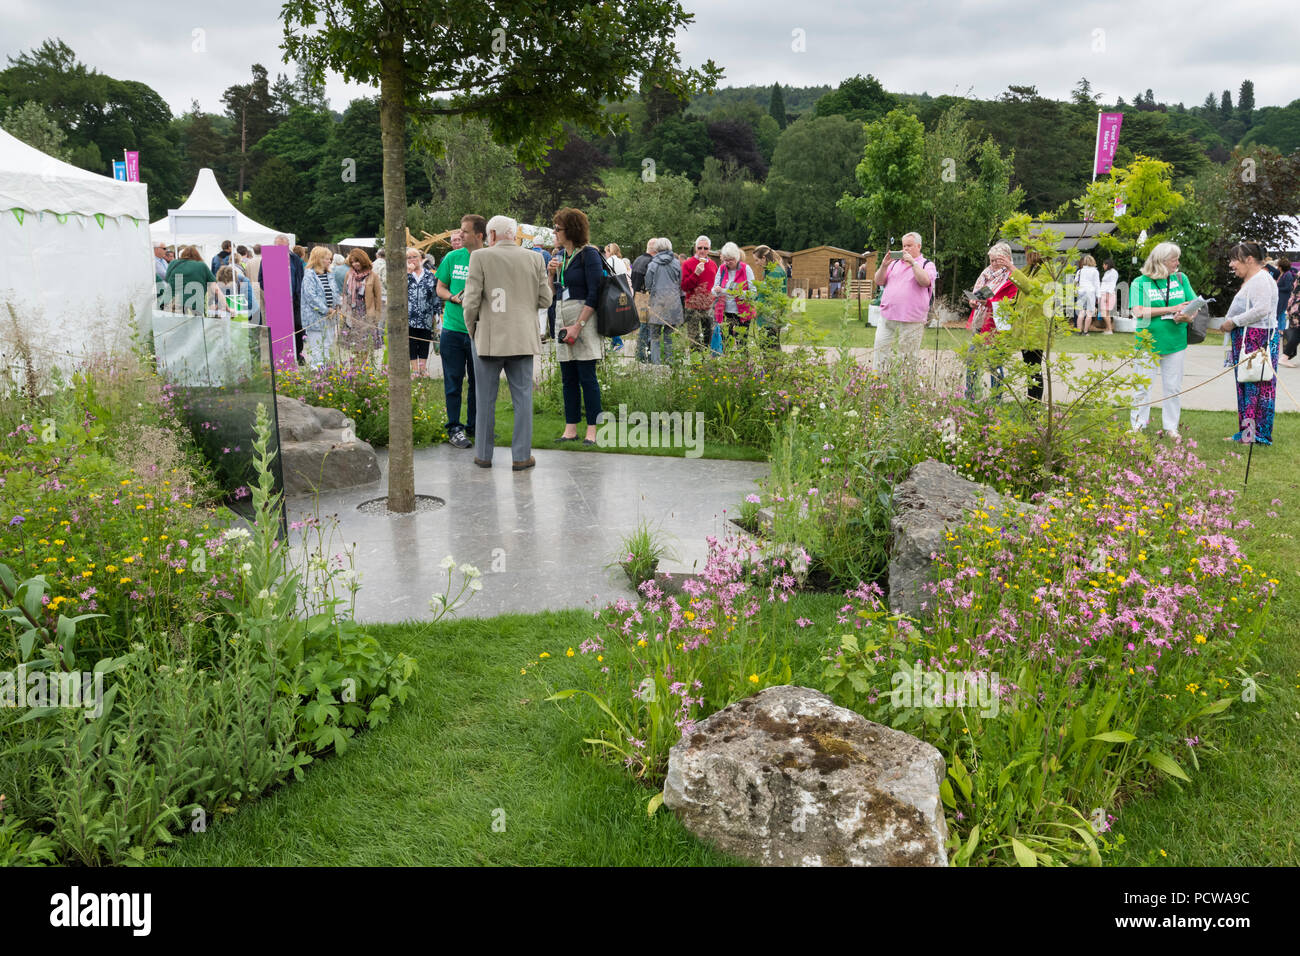 Menschen sehen zentrales Merkmal Baum, gepflasterten Bereich und Blumen im Garten, schöne Show - Macmillan Erbe Garten, RHS Chatsworth Flower Show, England, UK. Stockfoto